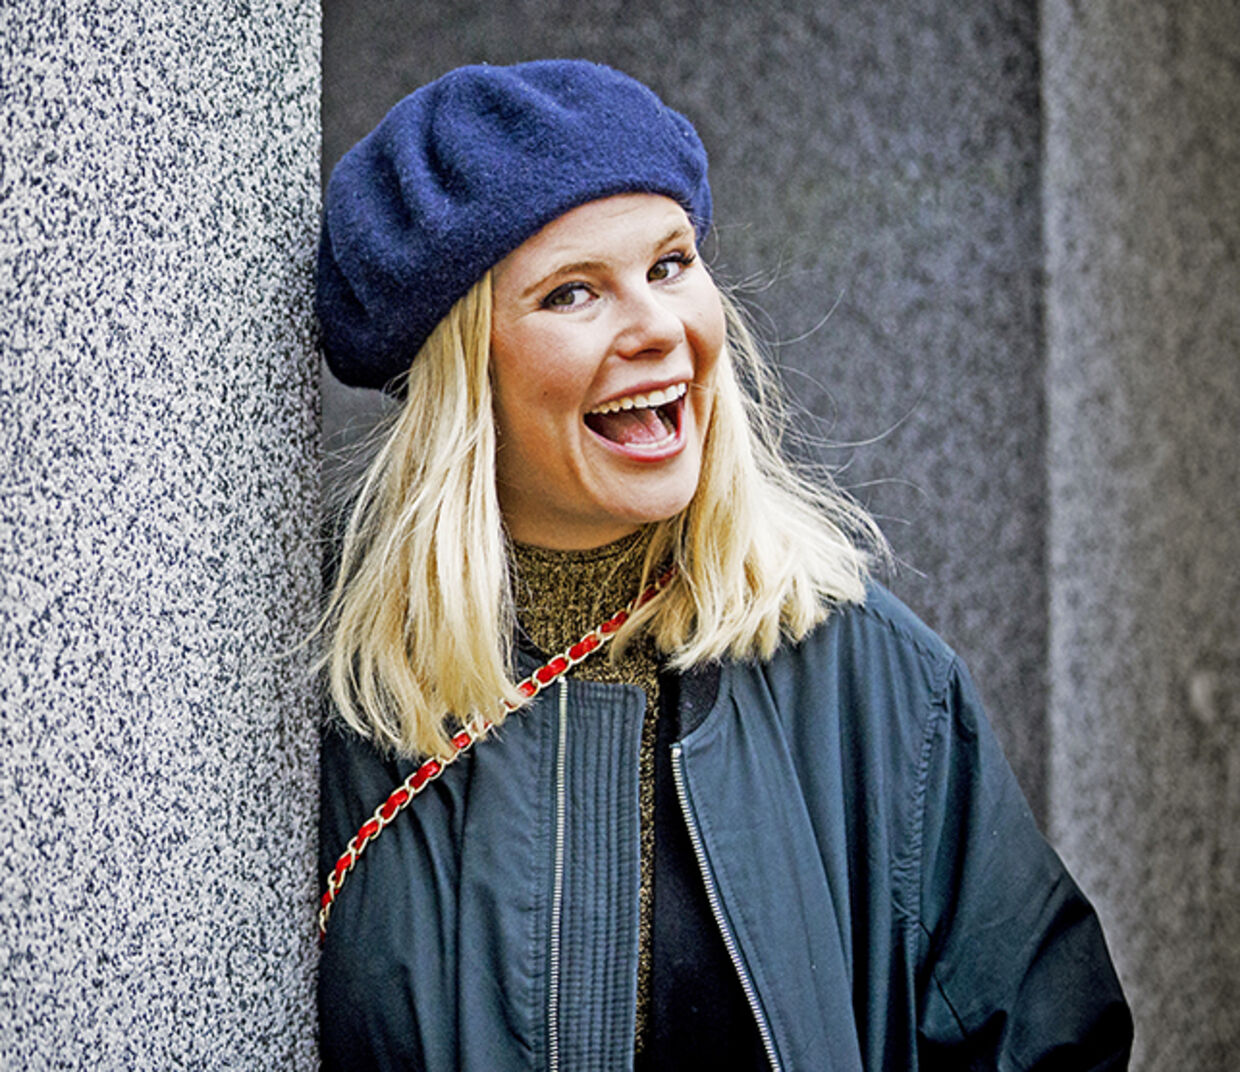 Den kække stil er et af Sofie Lindes varemærker og har været med til at sikre hendes store gennembrud.&nbsp; Foto: Lars E. Andreasen